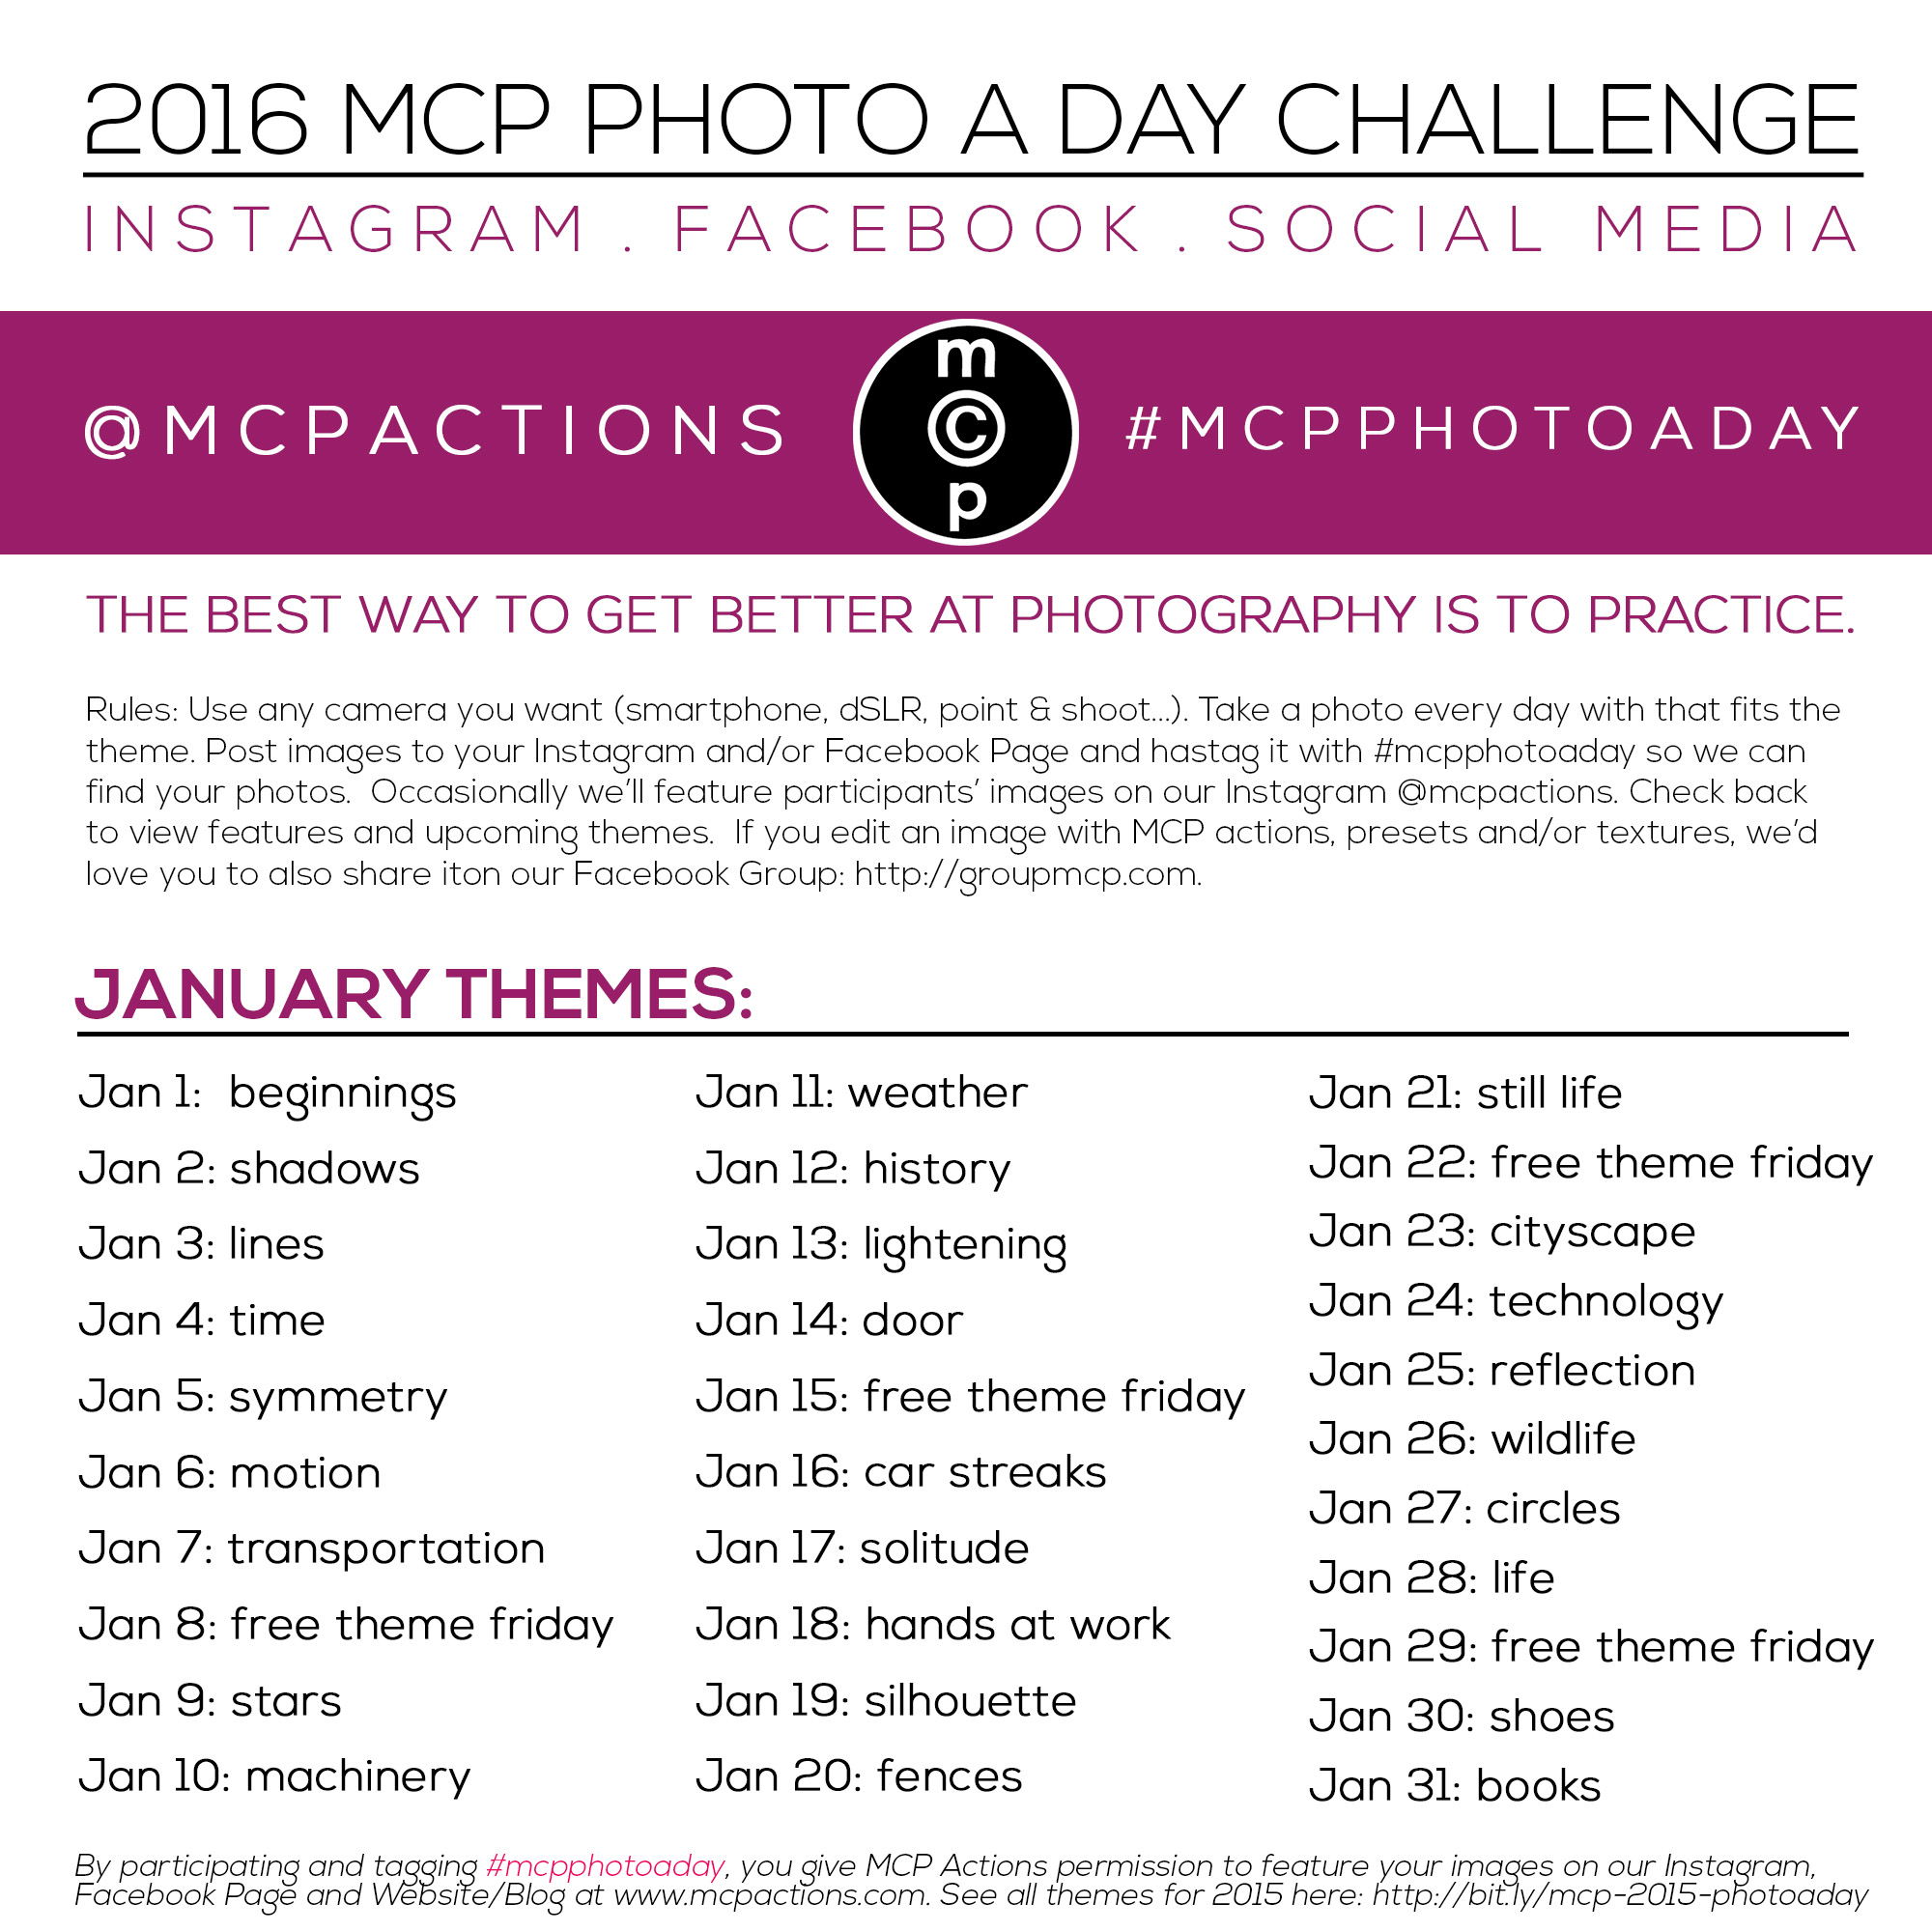 mcpphotoaday-born-2016-fill-out MCP फोटो 2016 के लिए एक दिन की चुनौती